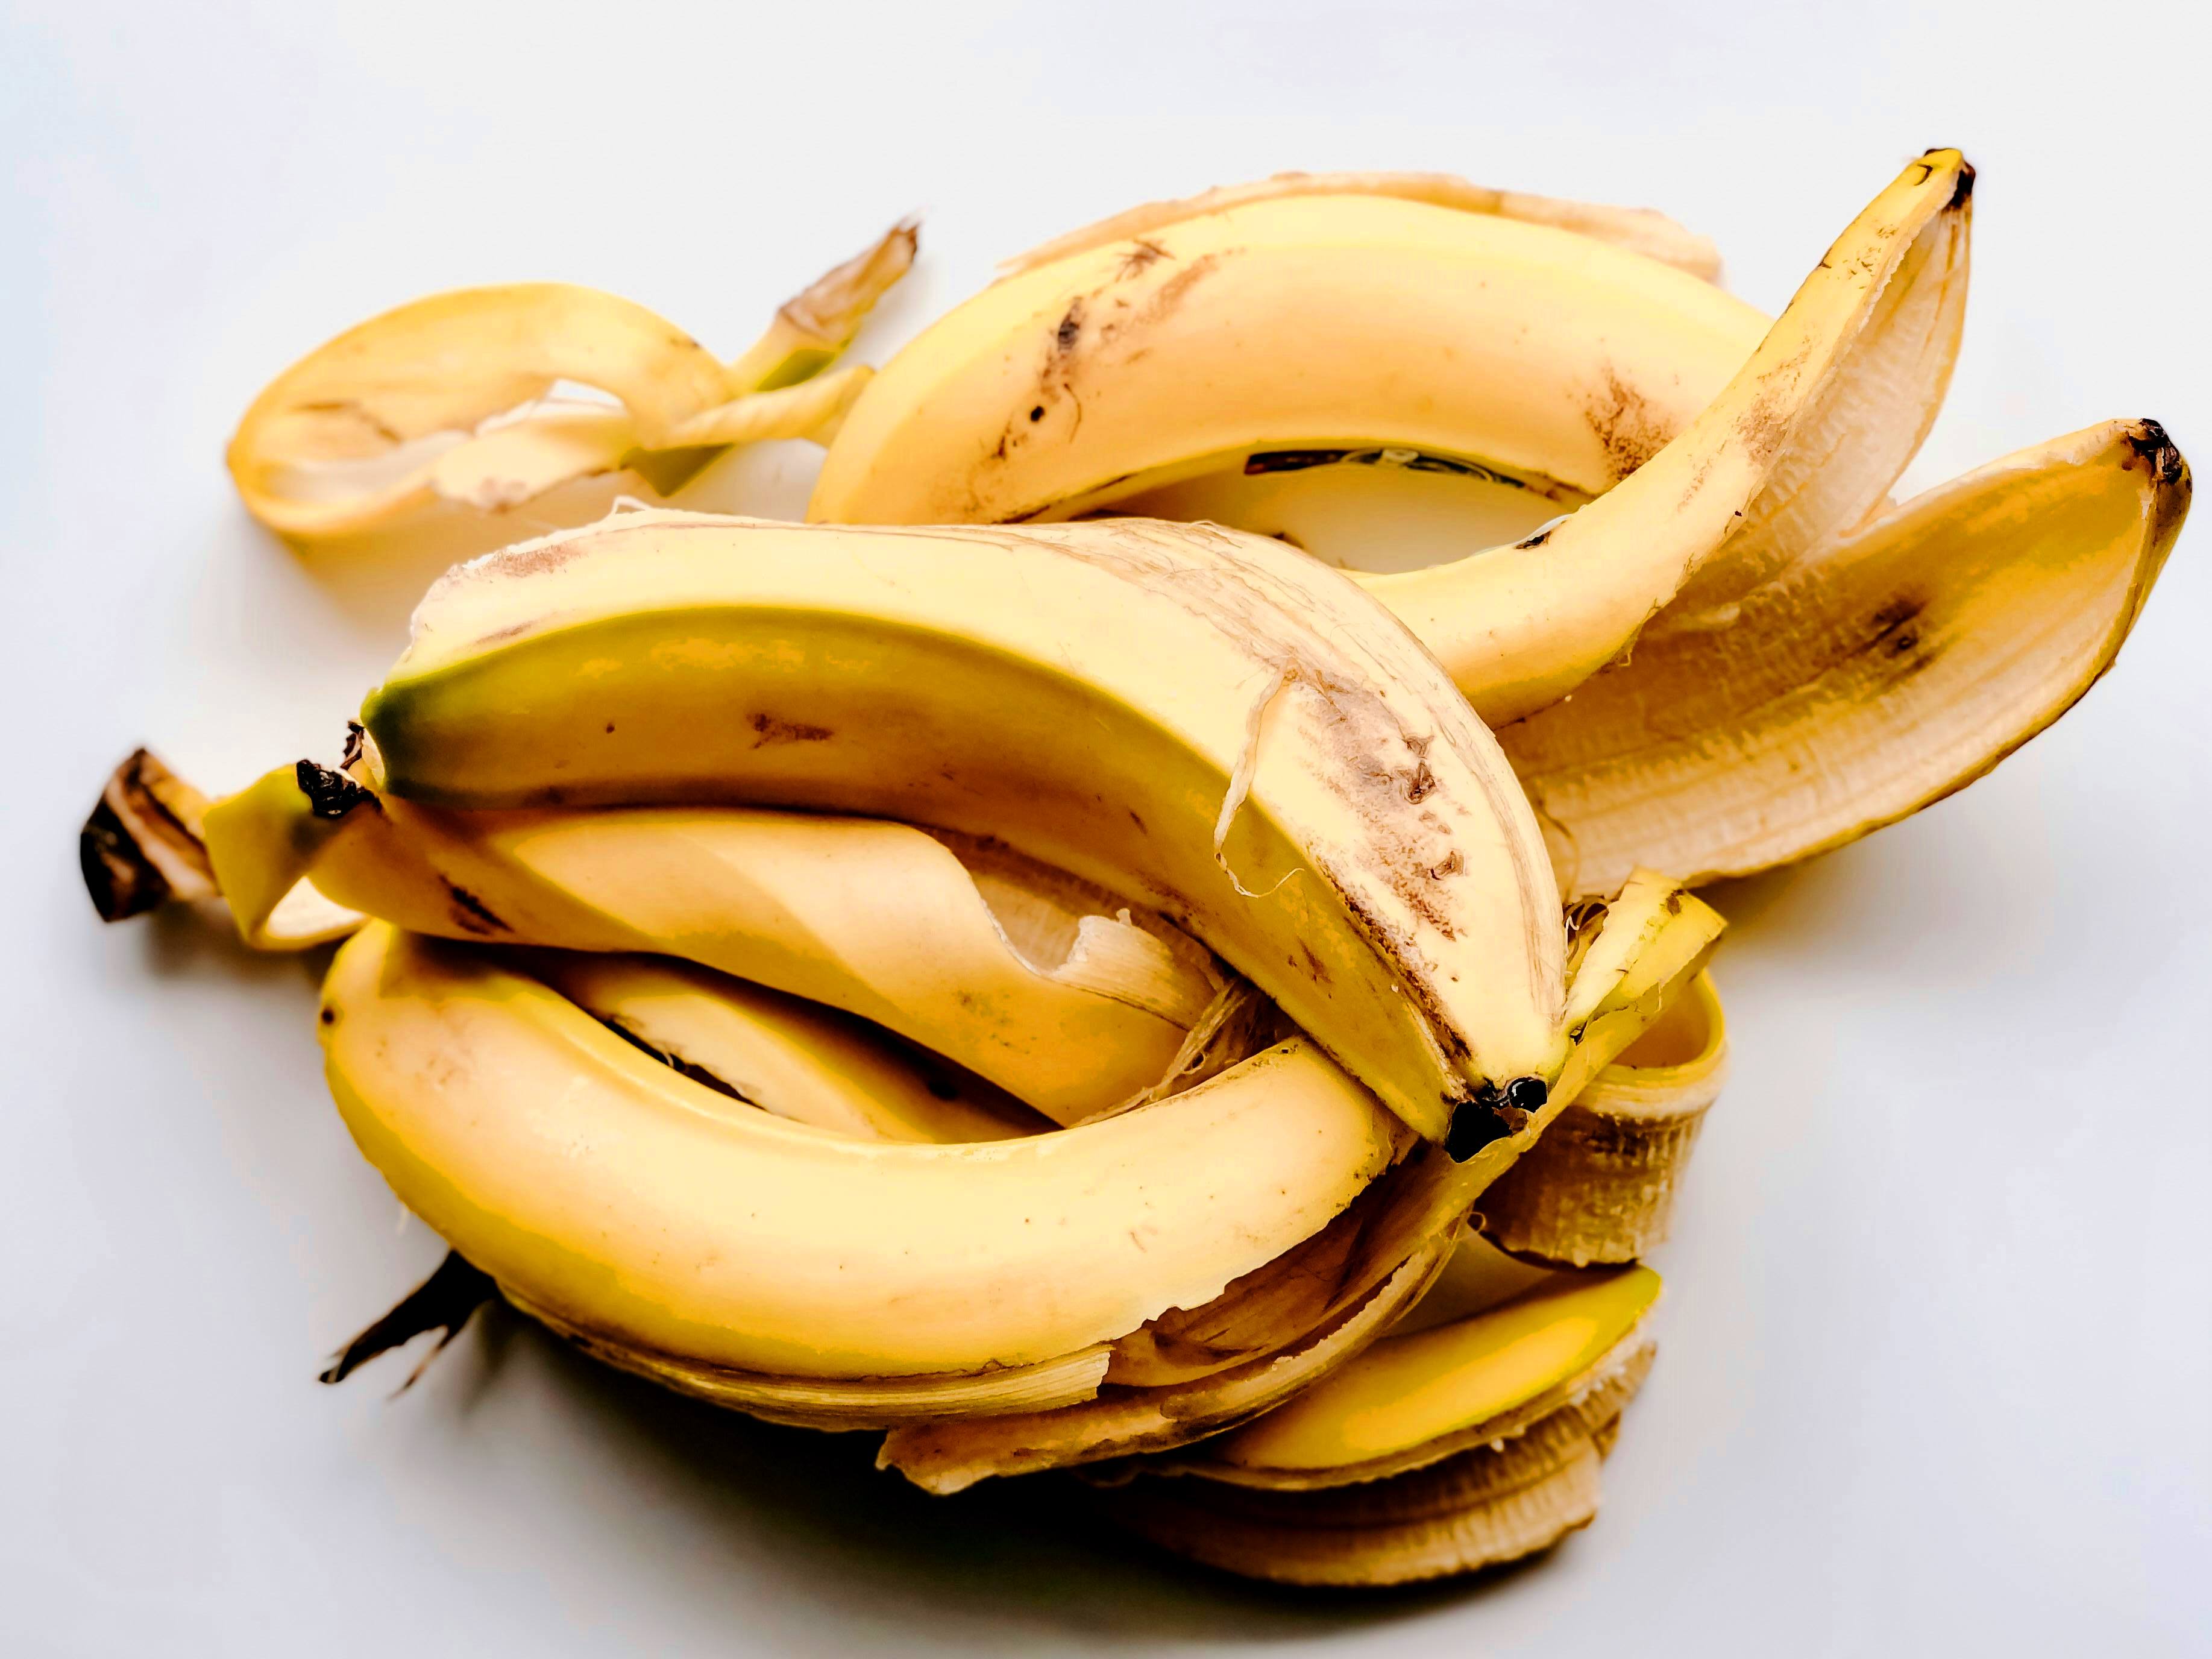 П'ять вагомих причин не викидати бананову шкірку: корисна в побуті та догляді за шкірою